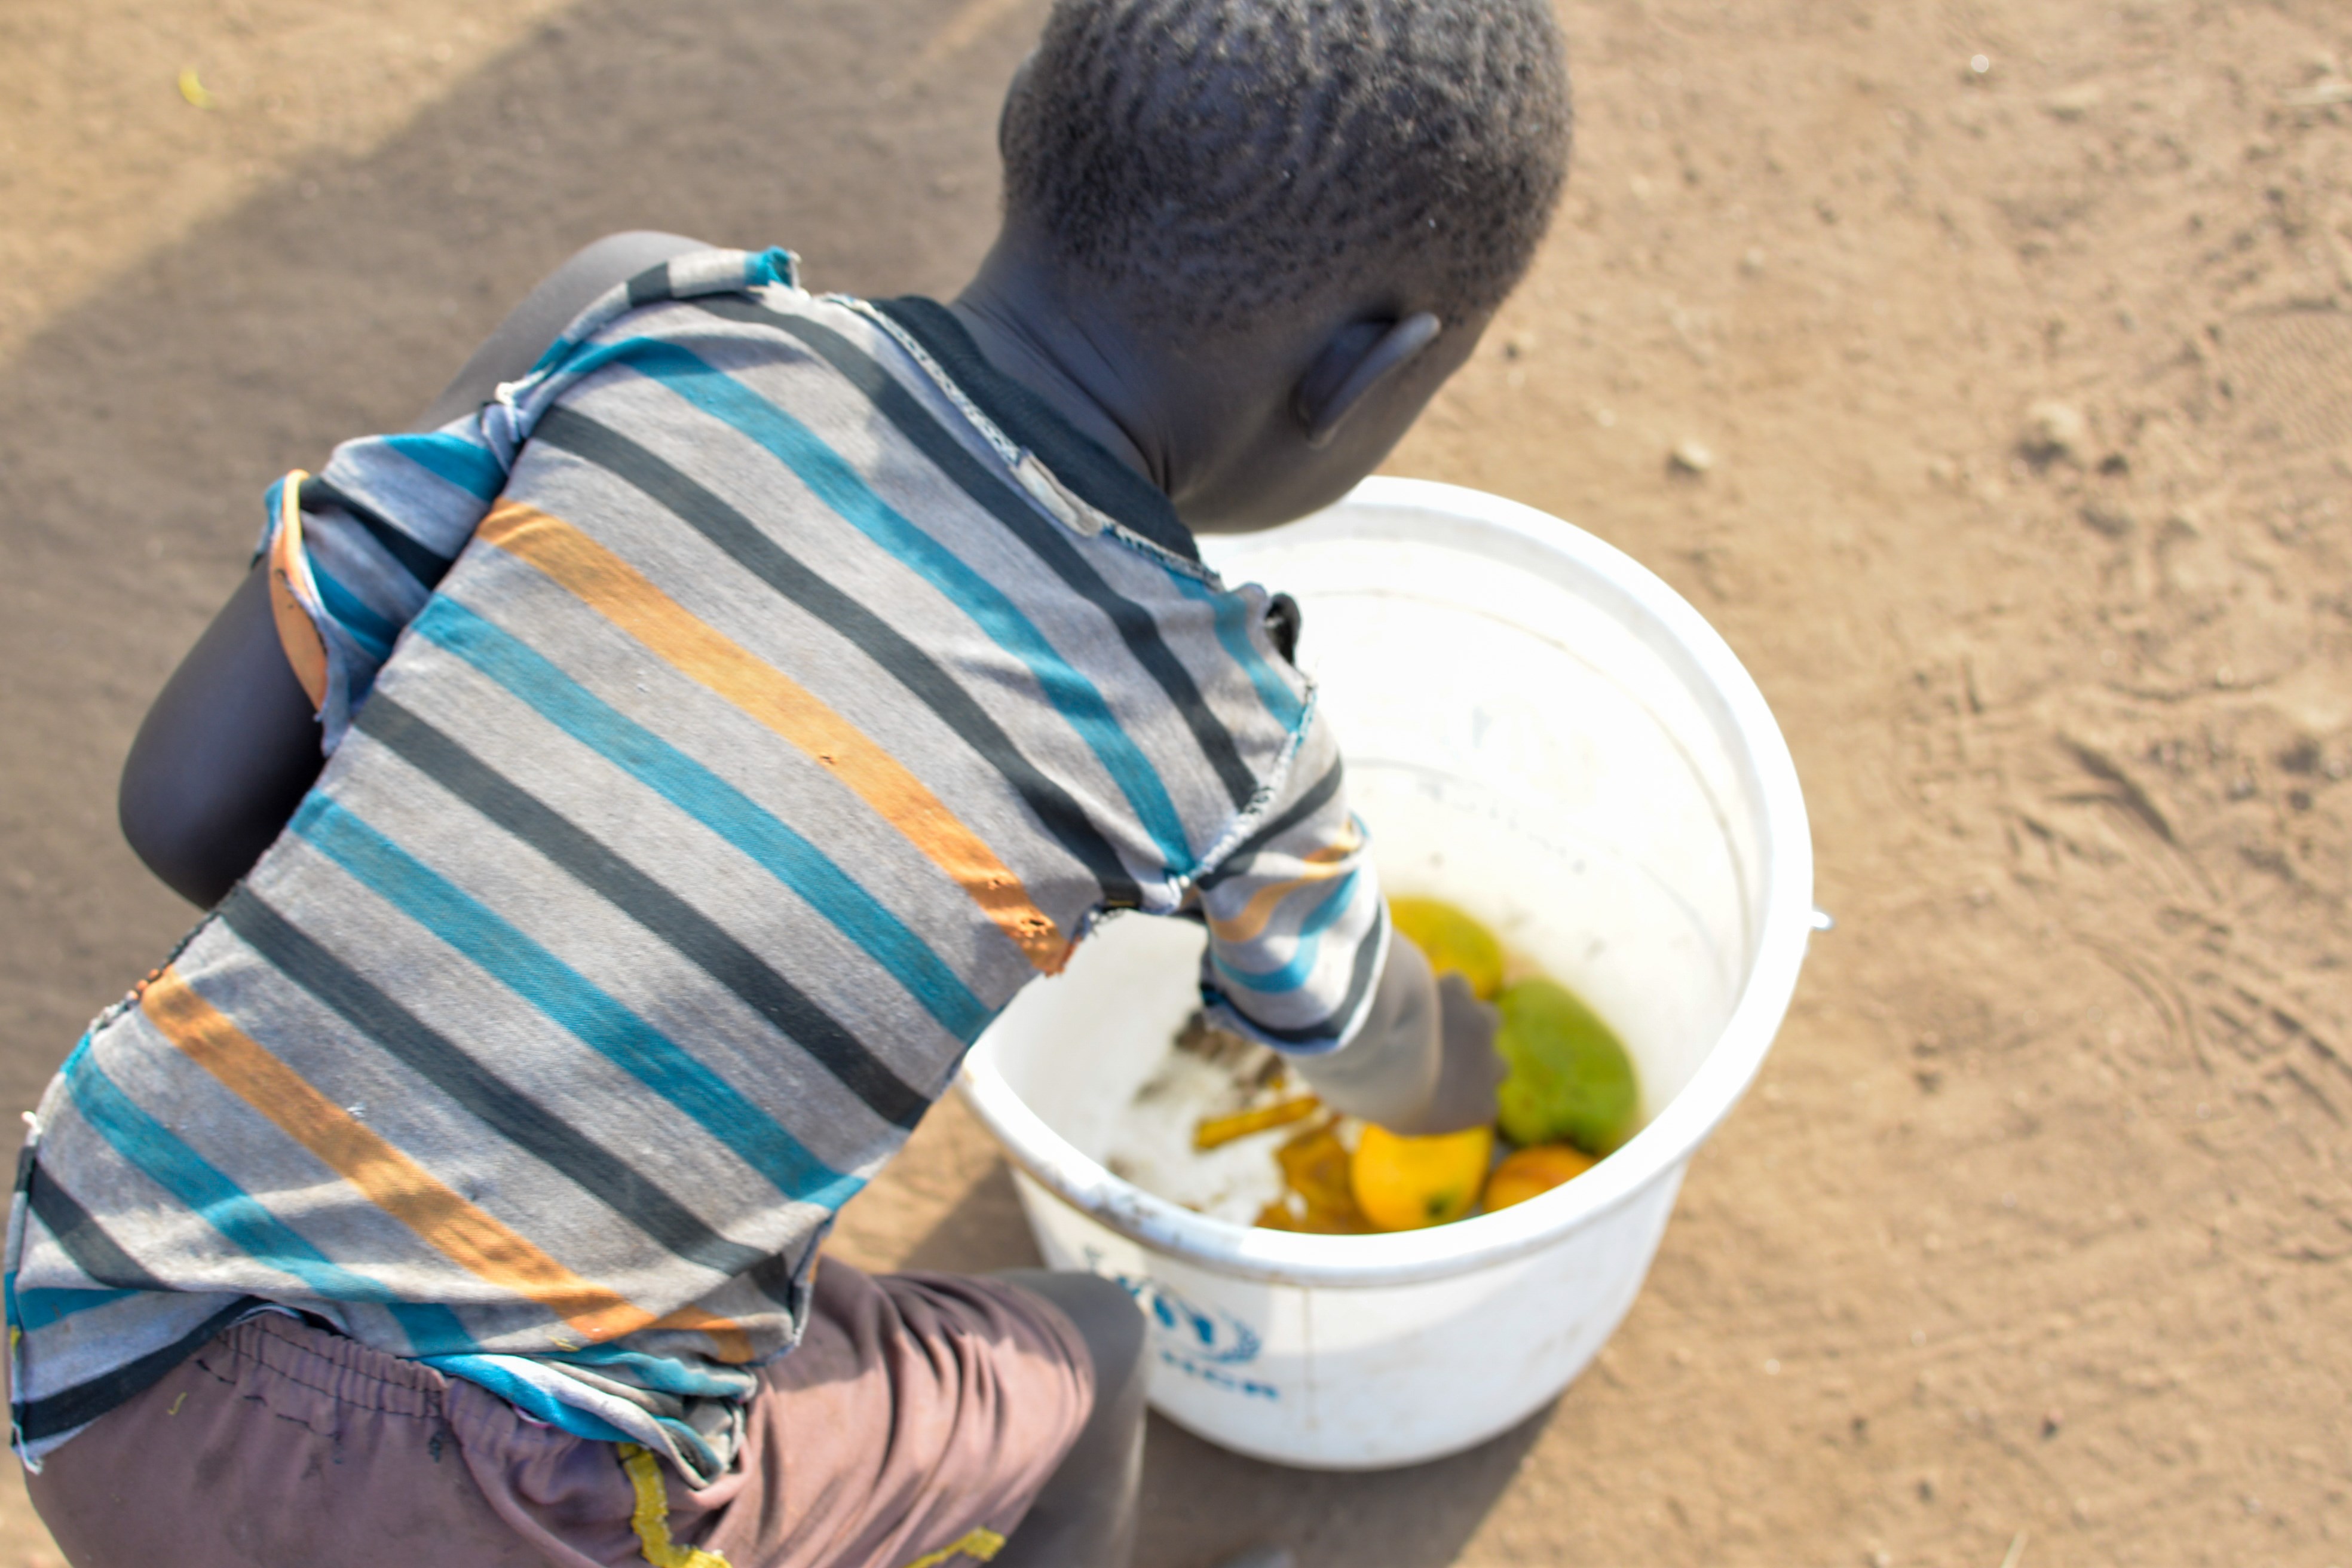 Un niño desnutrido intentando alimentarse cogiendo la escas acomida que hay de un recipiente